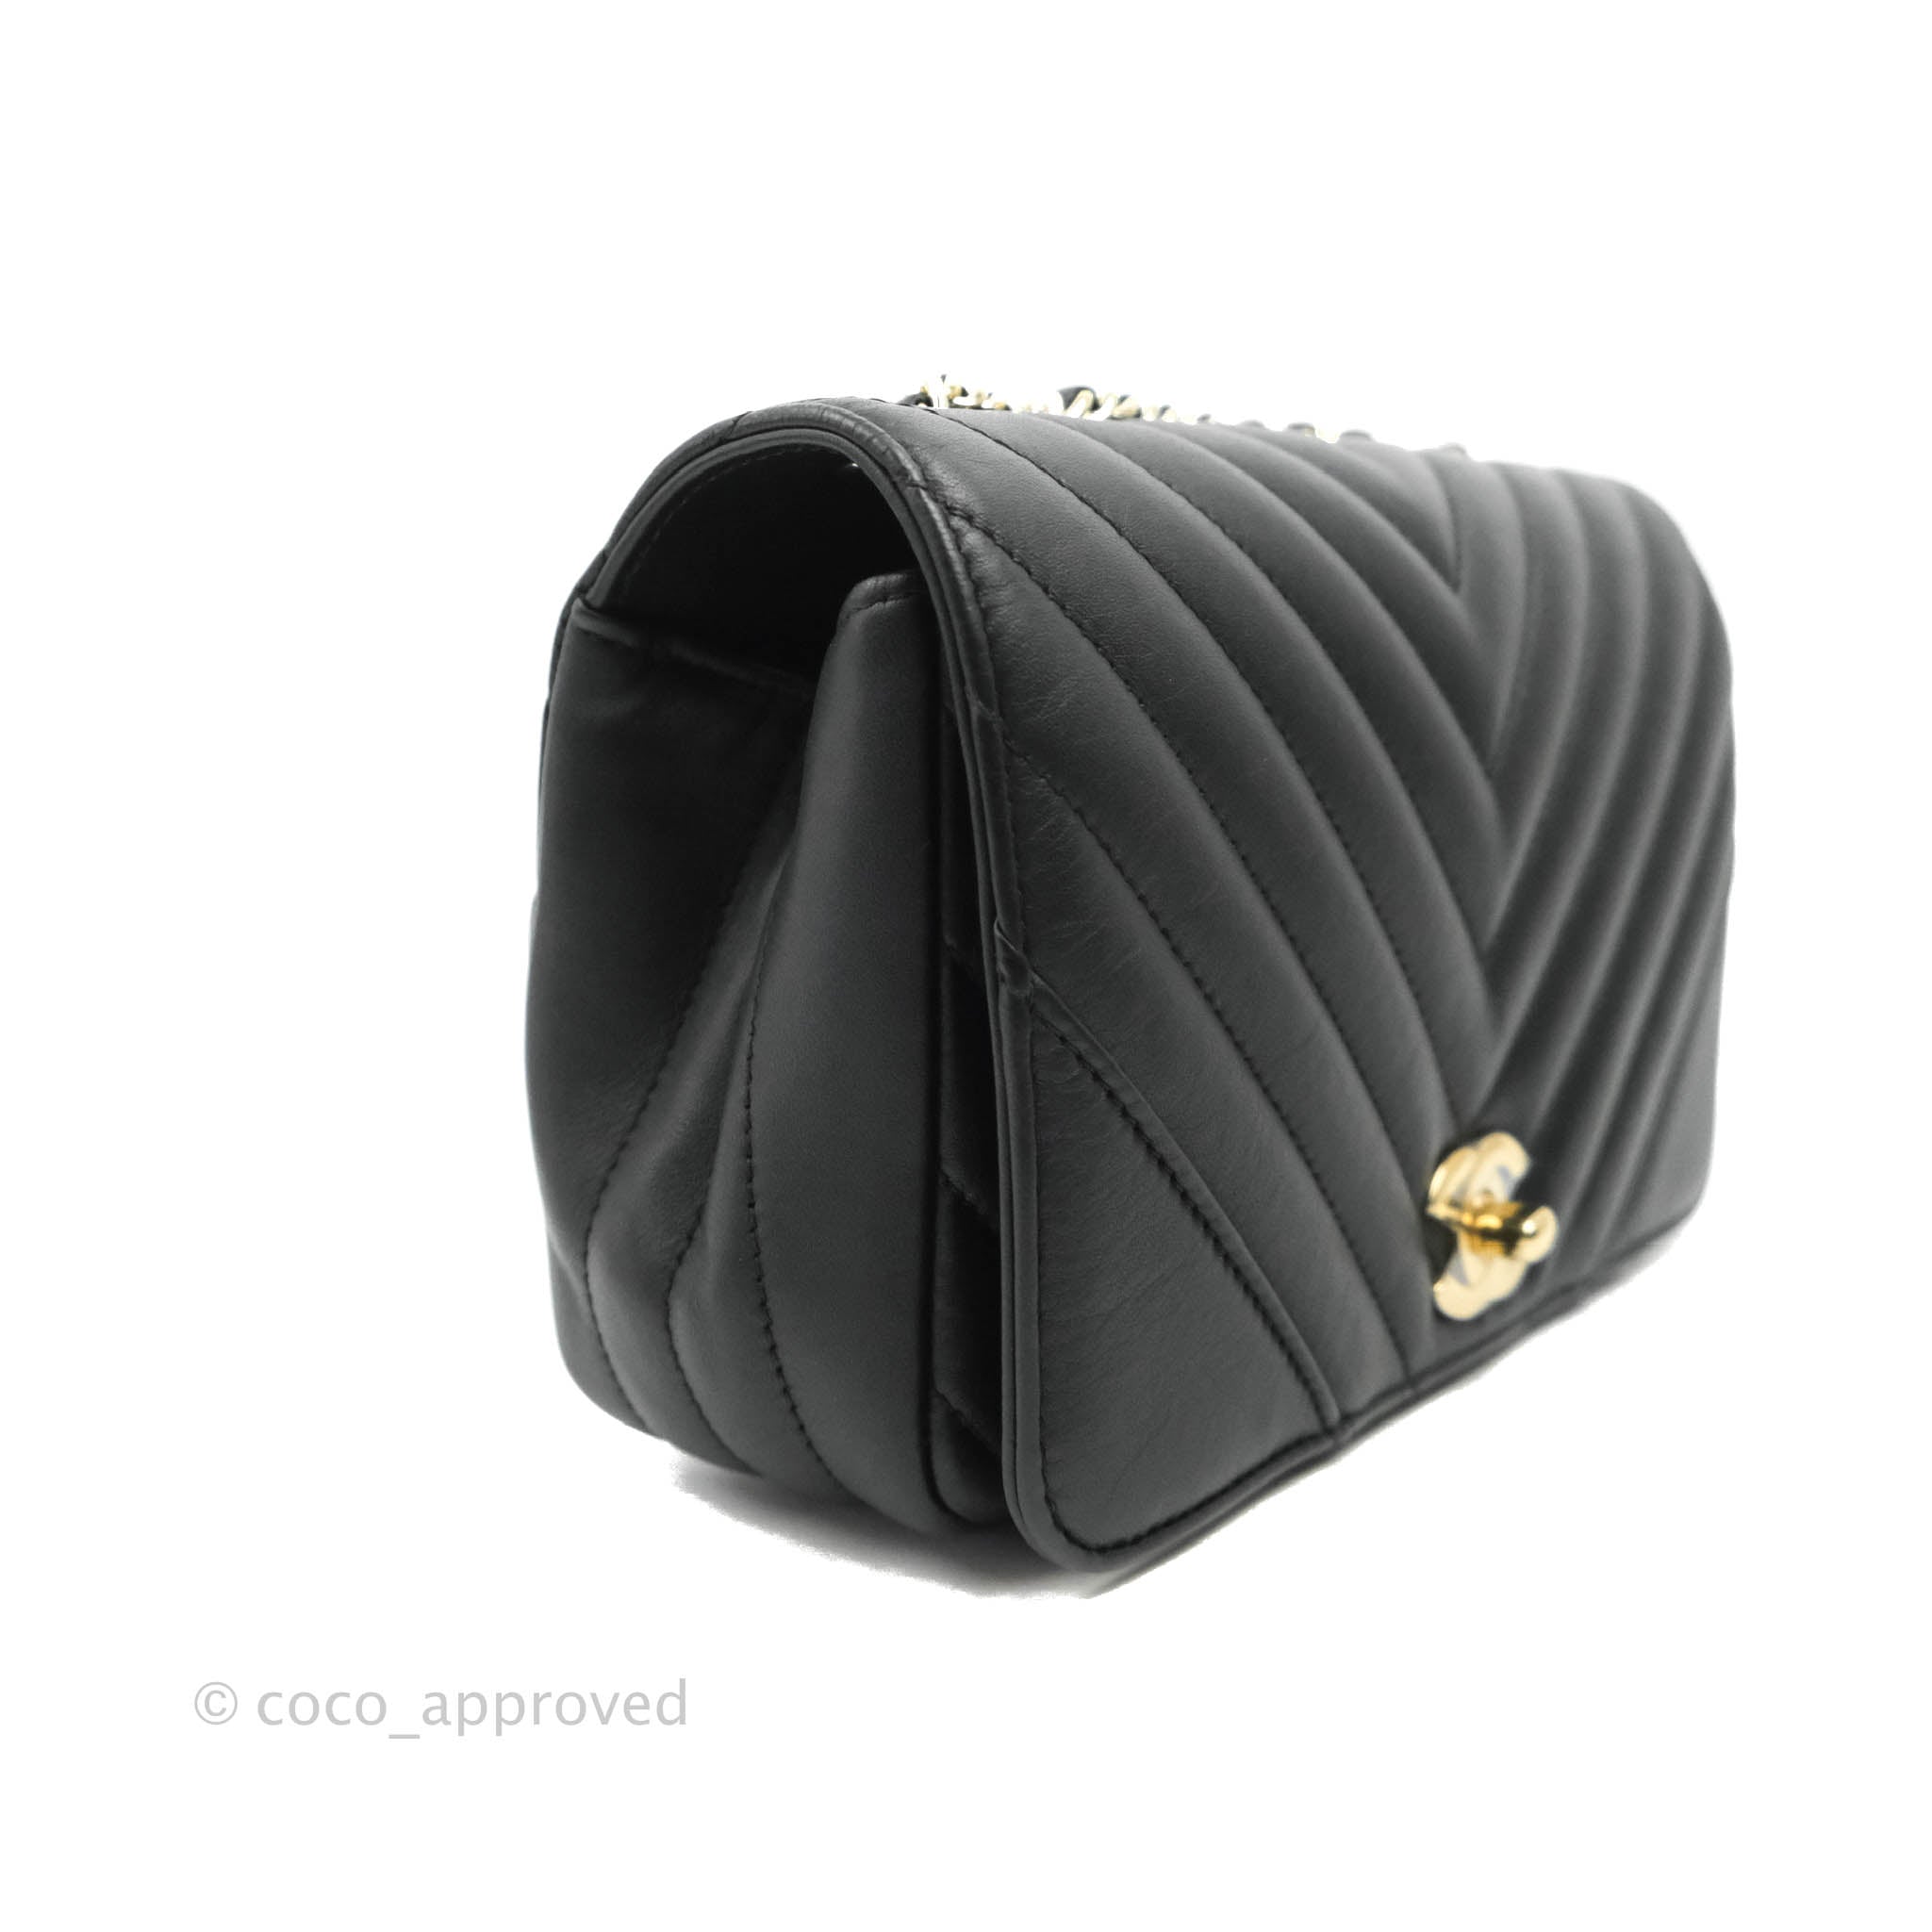 Box Shoulder & Messenger Bags for Women in black color